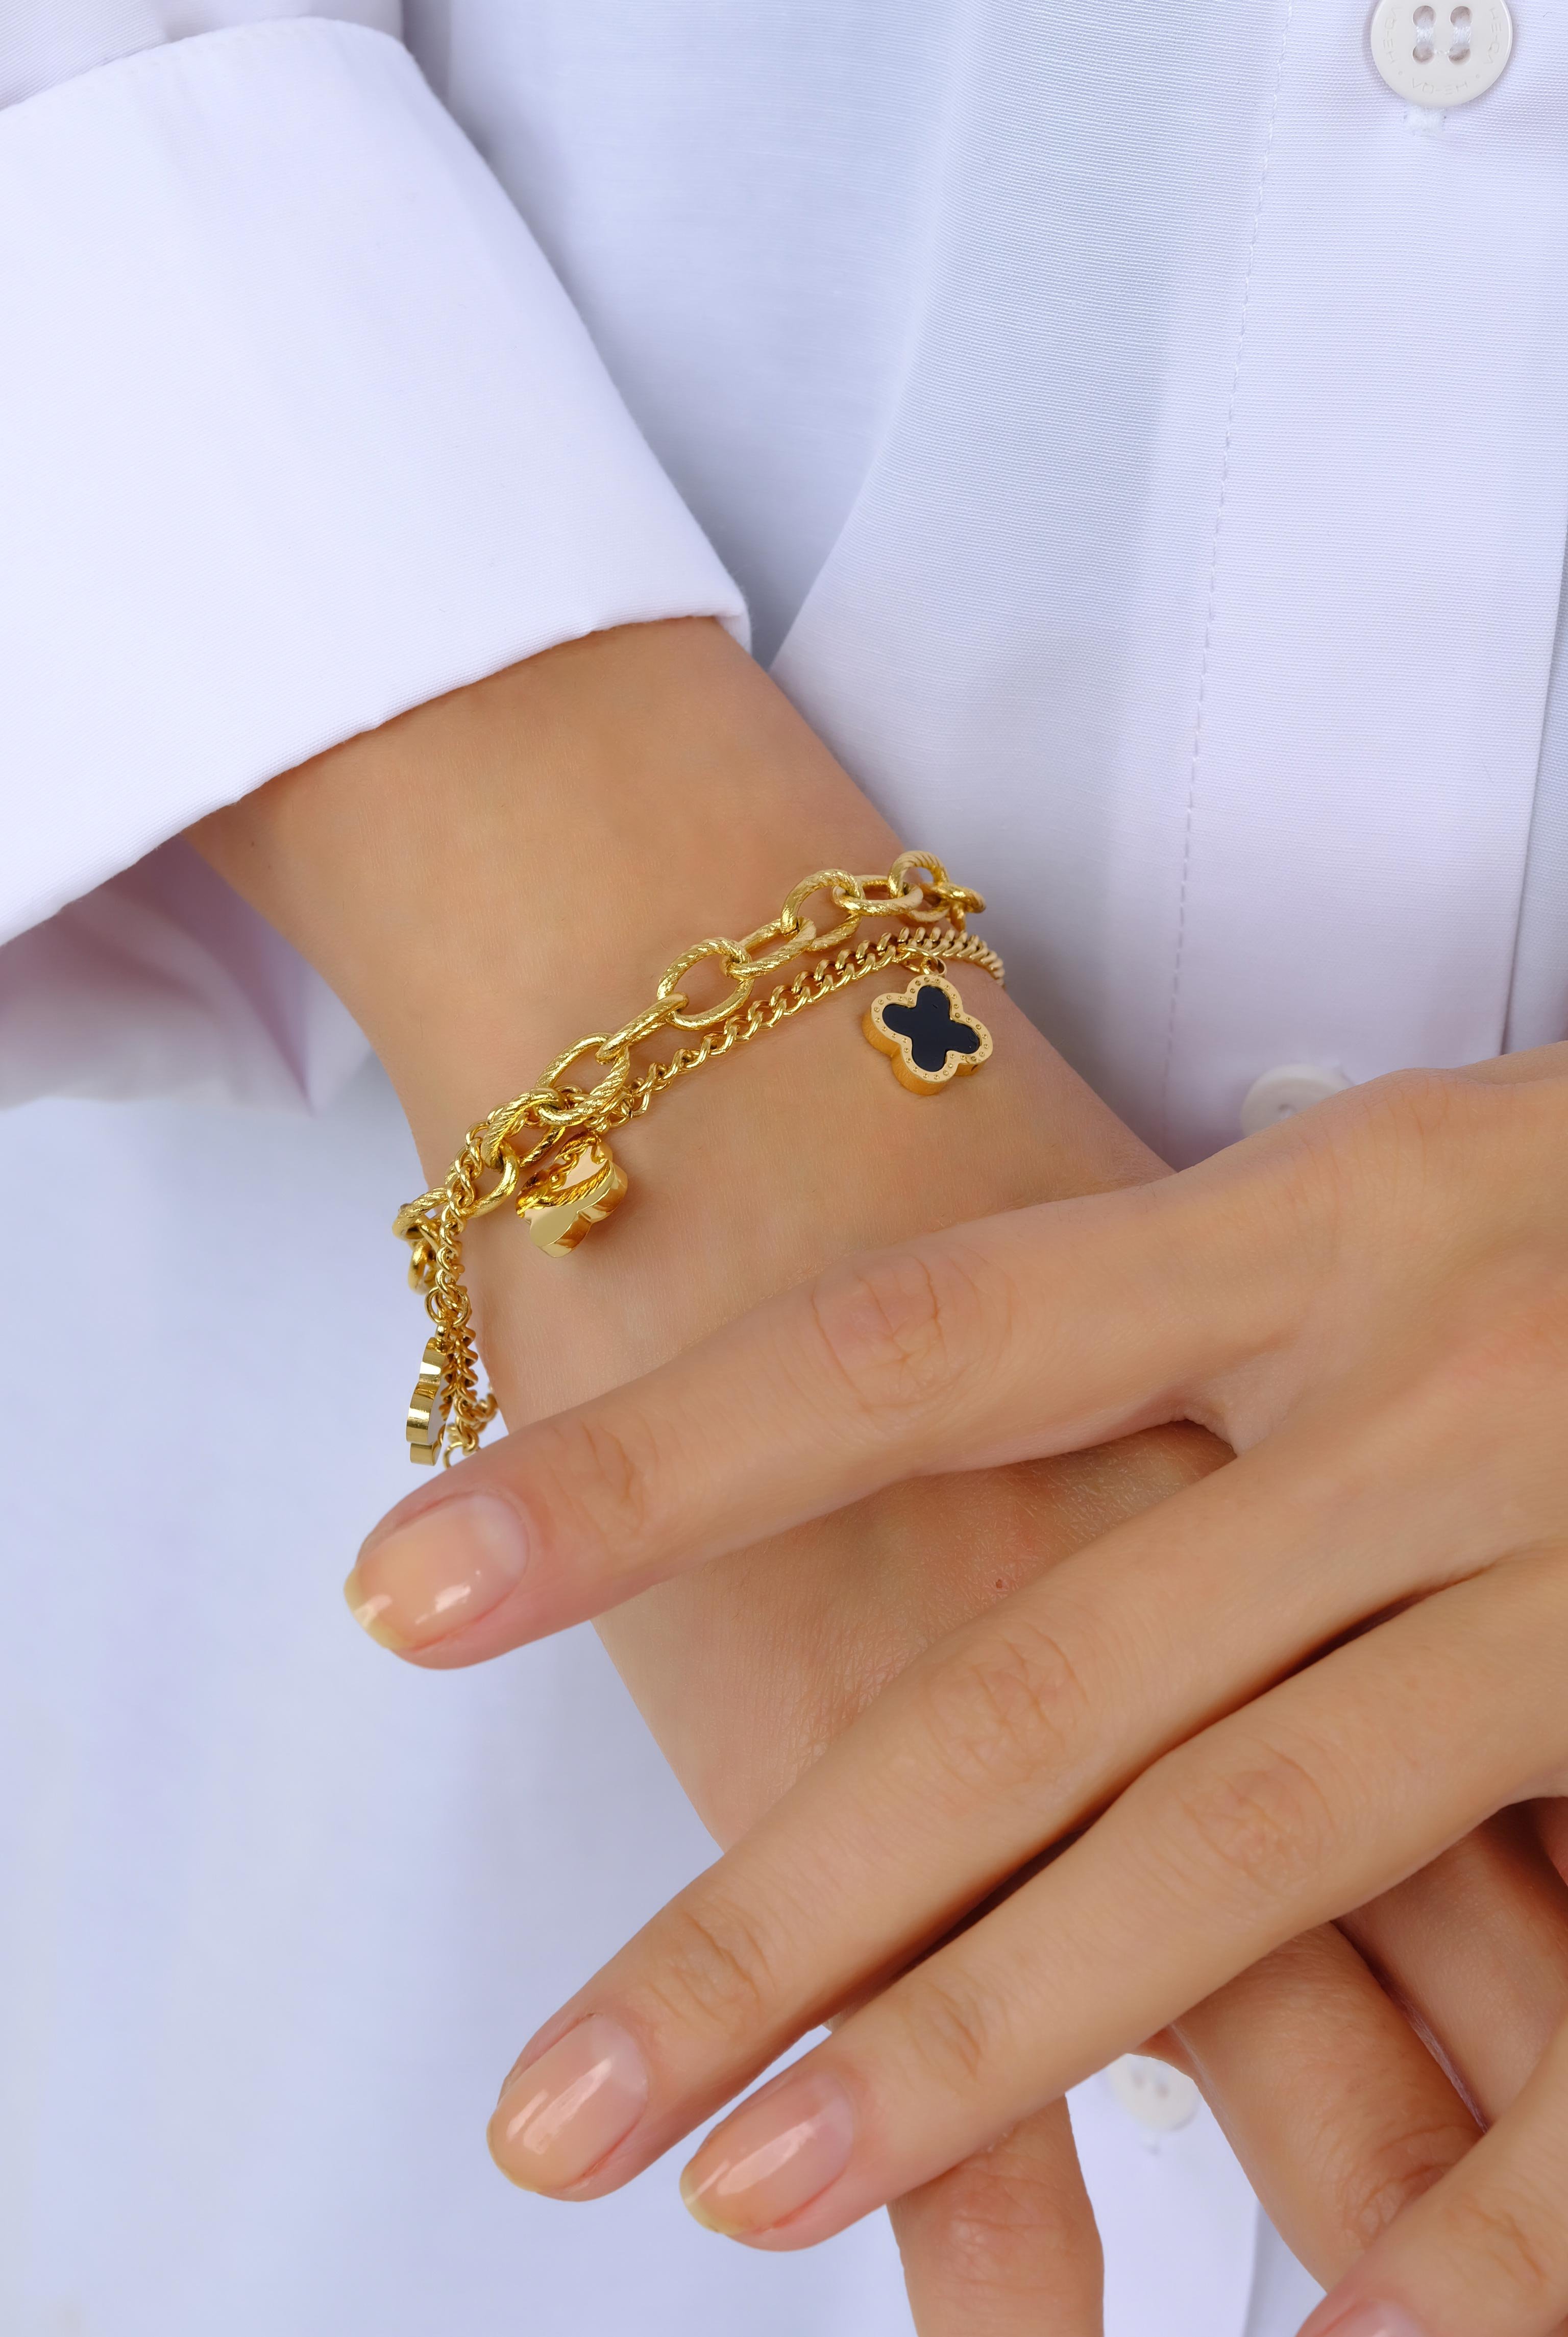 Gold Bracelet With Black Clover